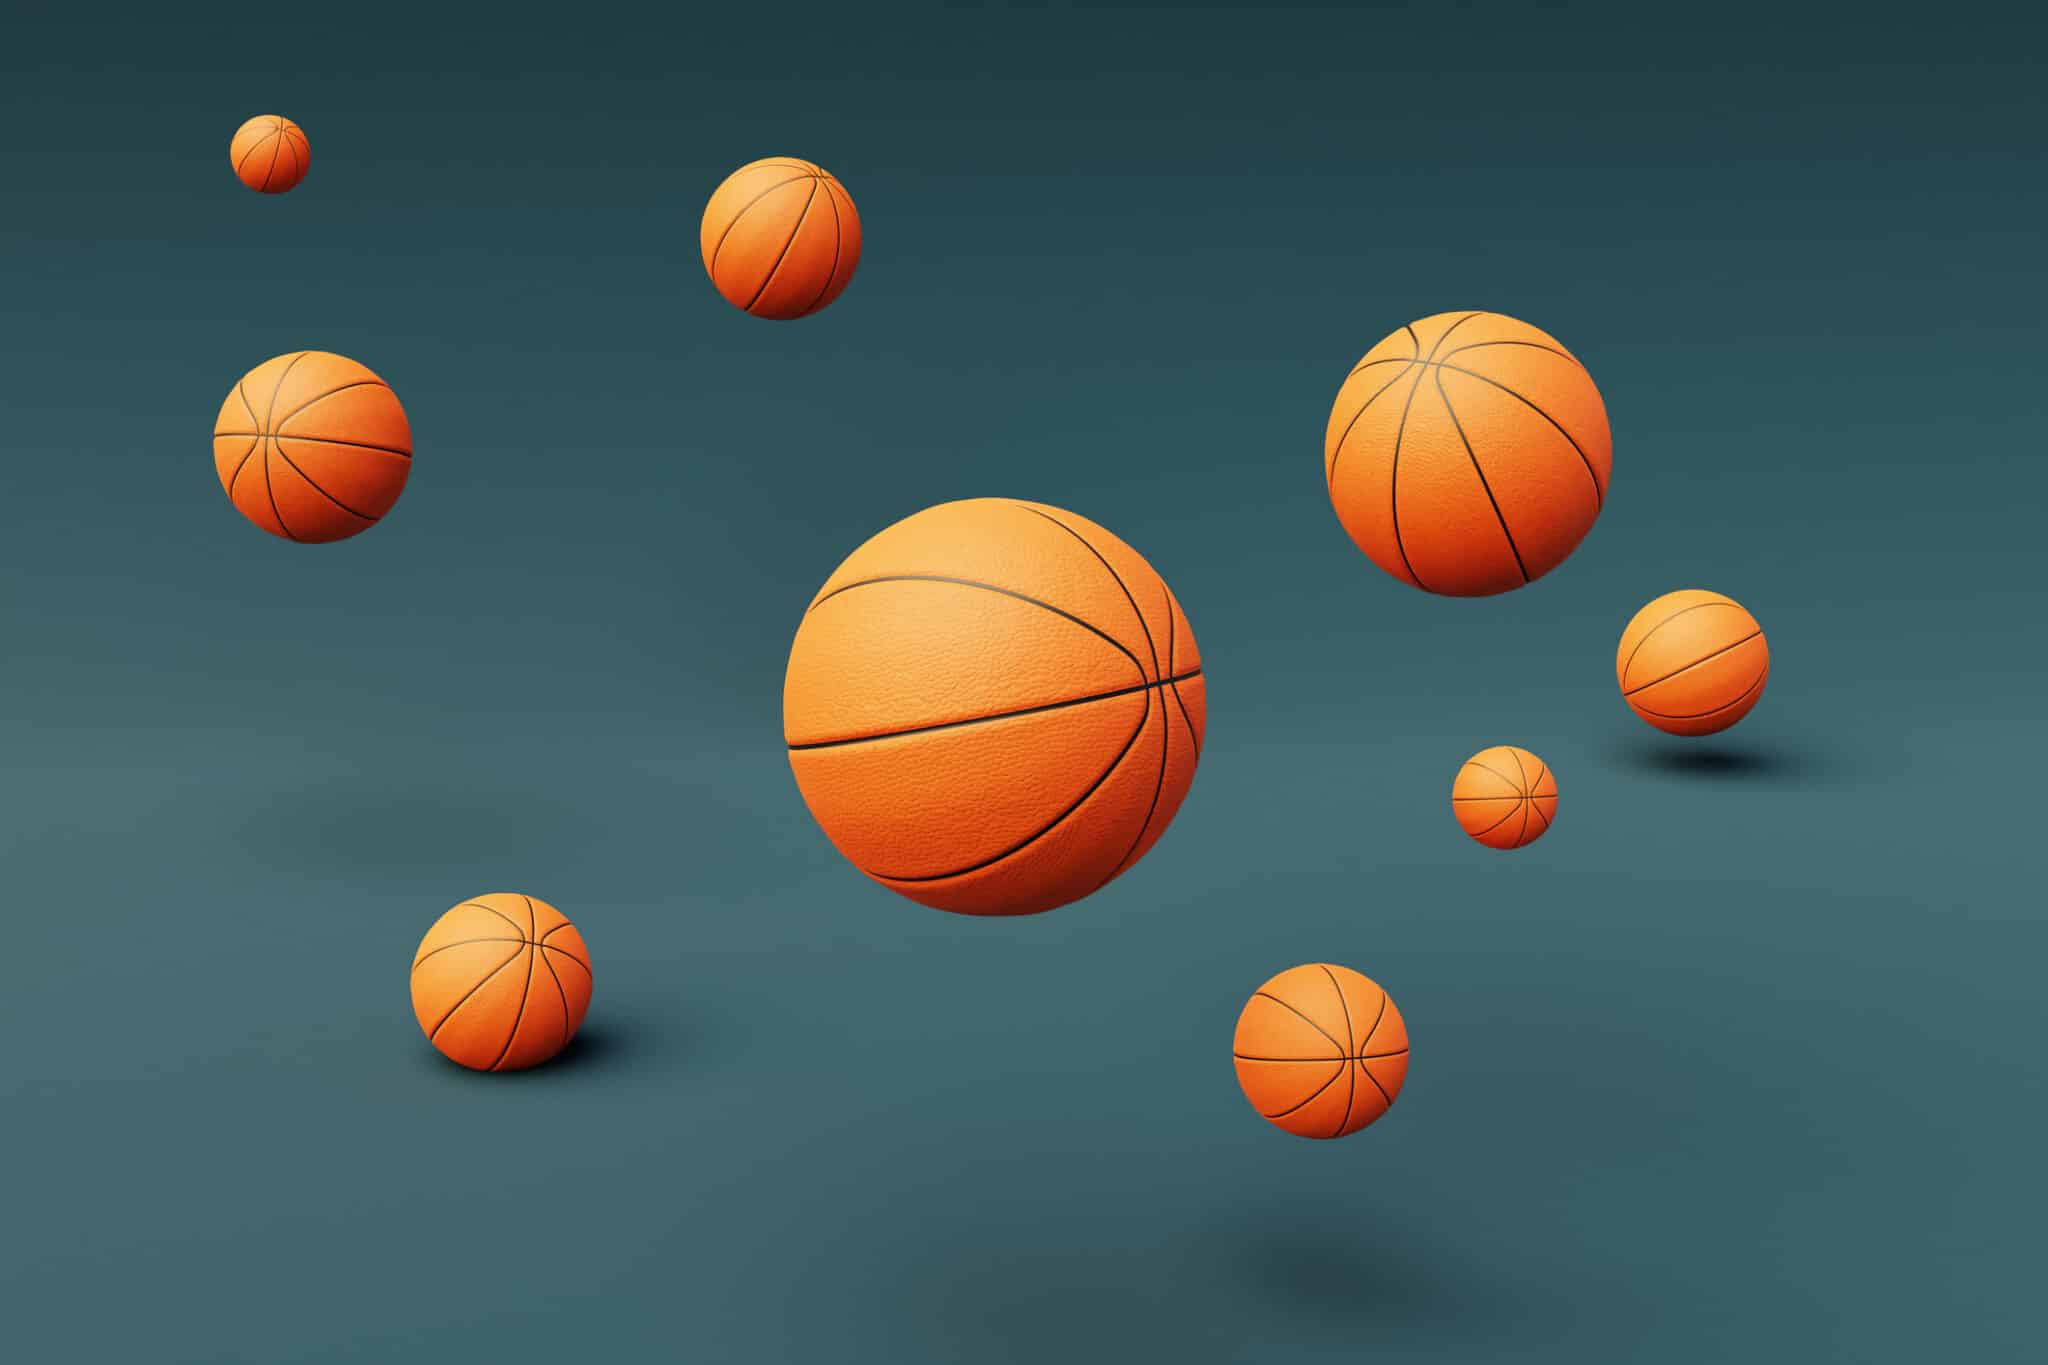 3D illustration of basketballs flying over blue background. Concept of sport.